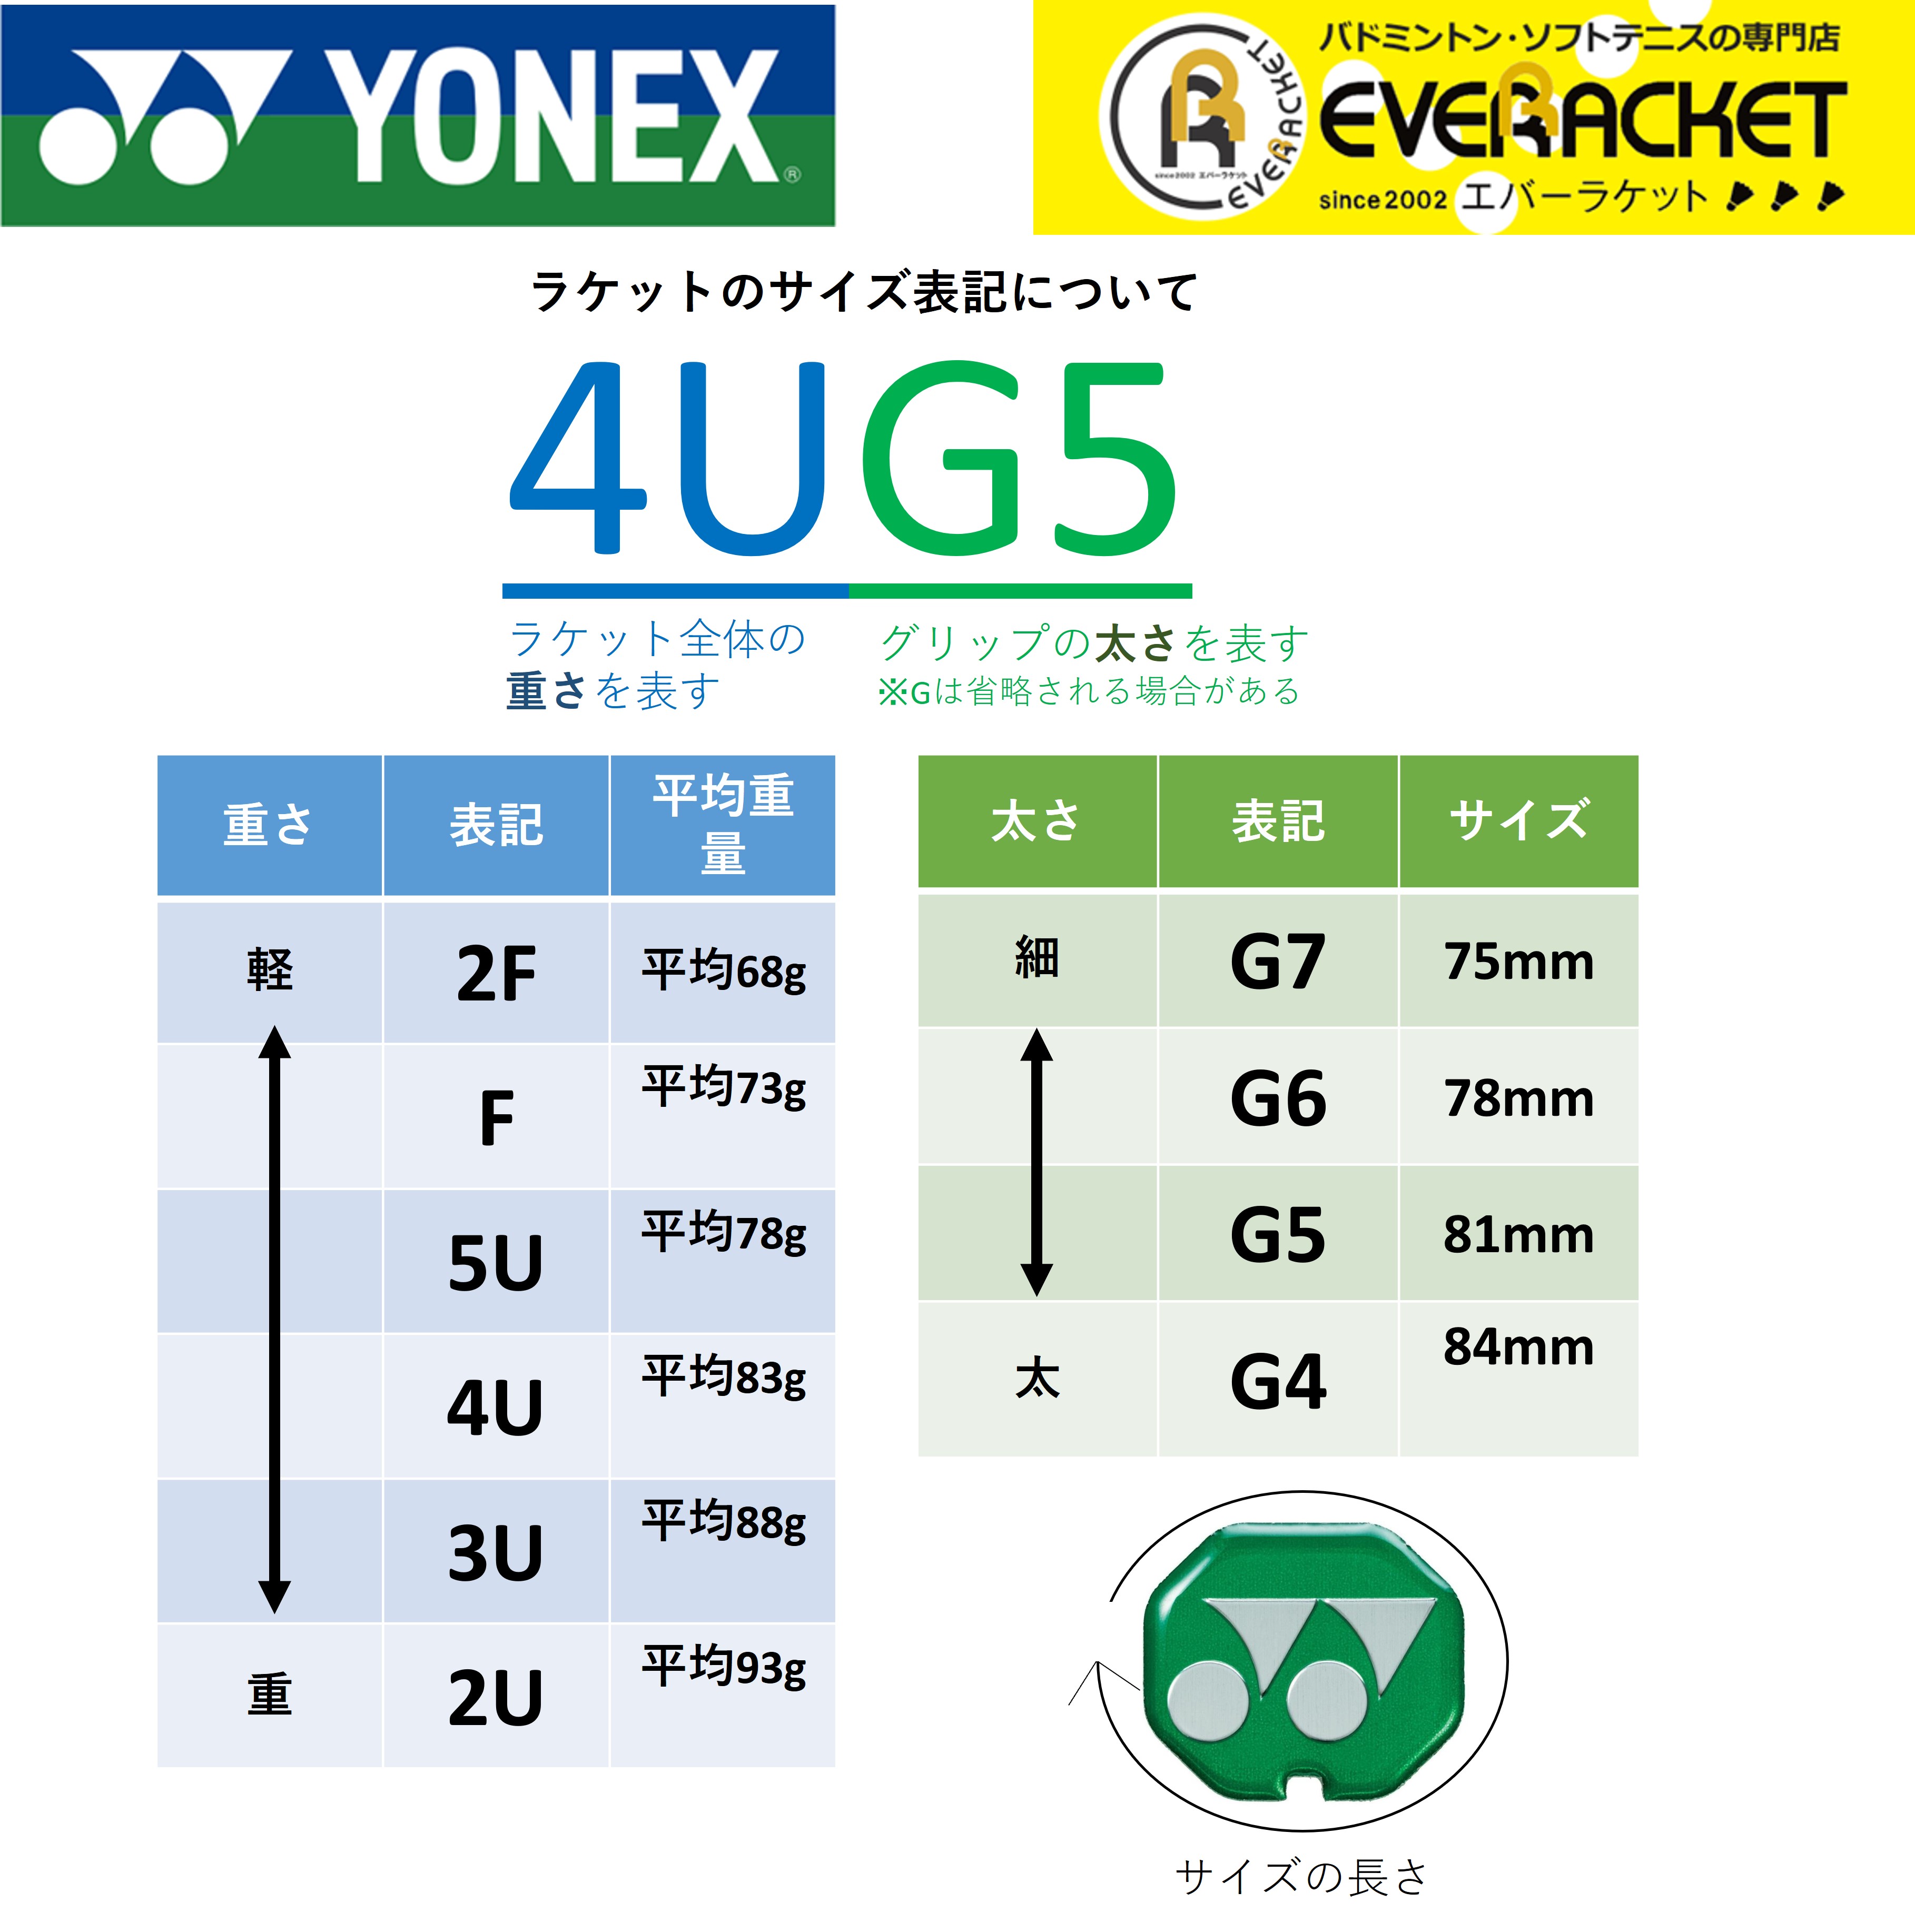 【最短出荷】【ガット代・張り代無料】YONEX ヨネックス バドミントンラケット アストロクス77ツアー AX77-T 3